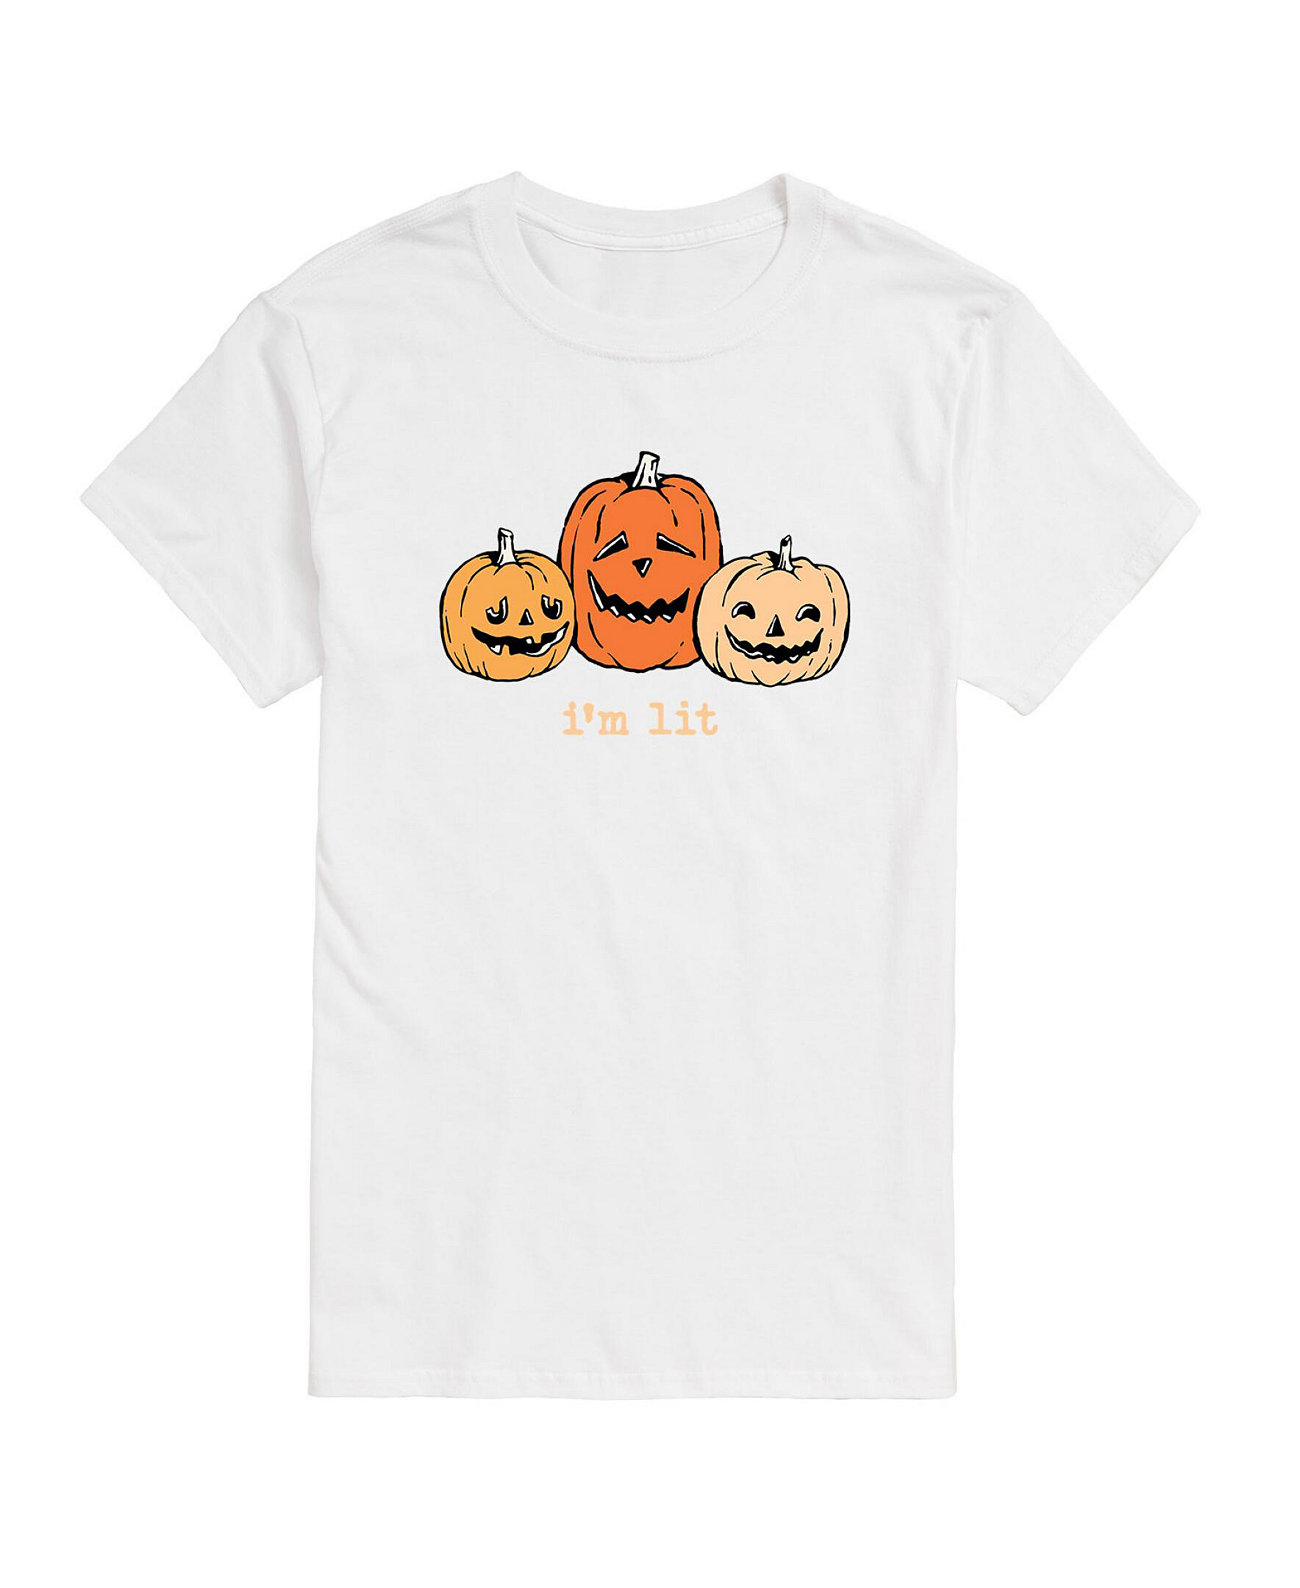 Мужская футболка с коротким рукавом для мгновенного сообщения Хэллоуина AIRWAVES